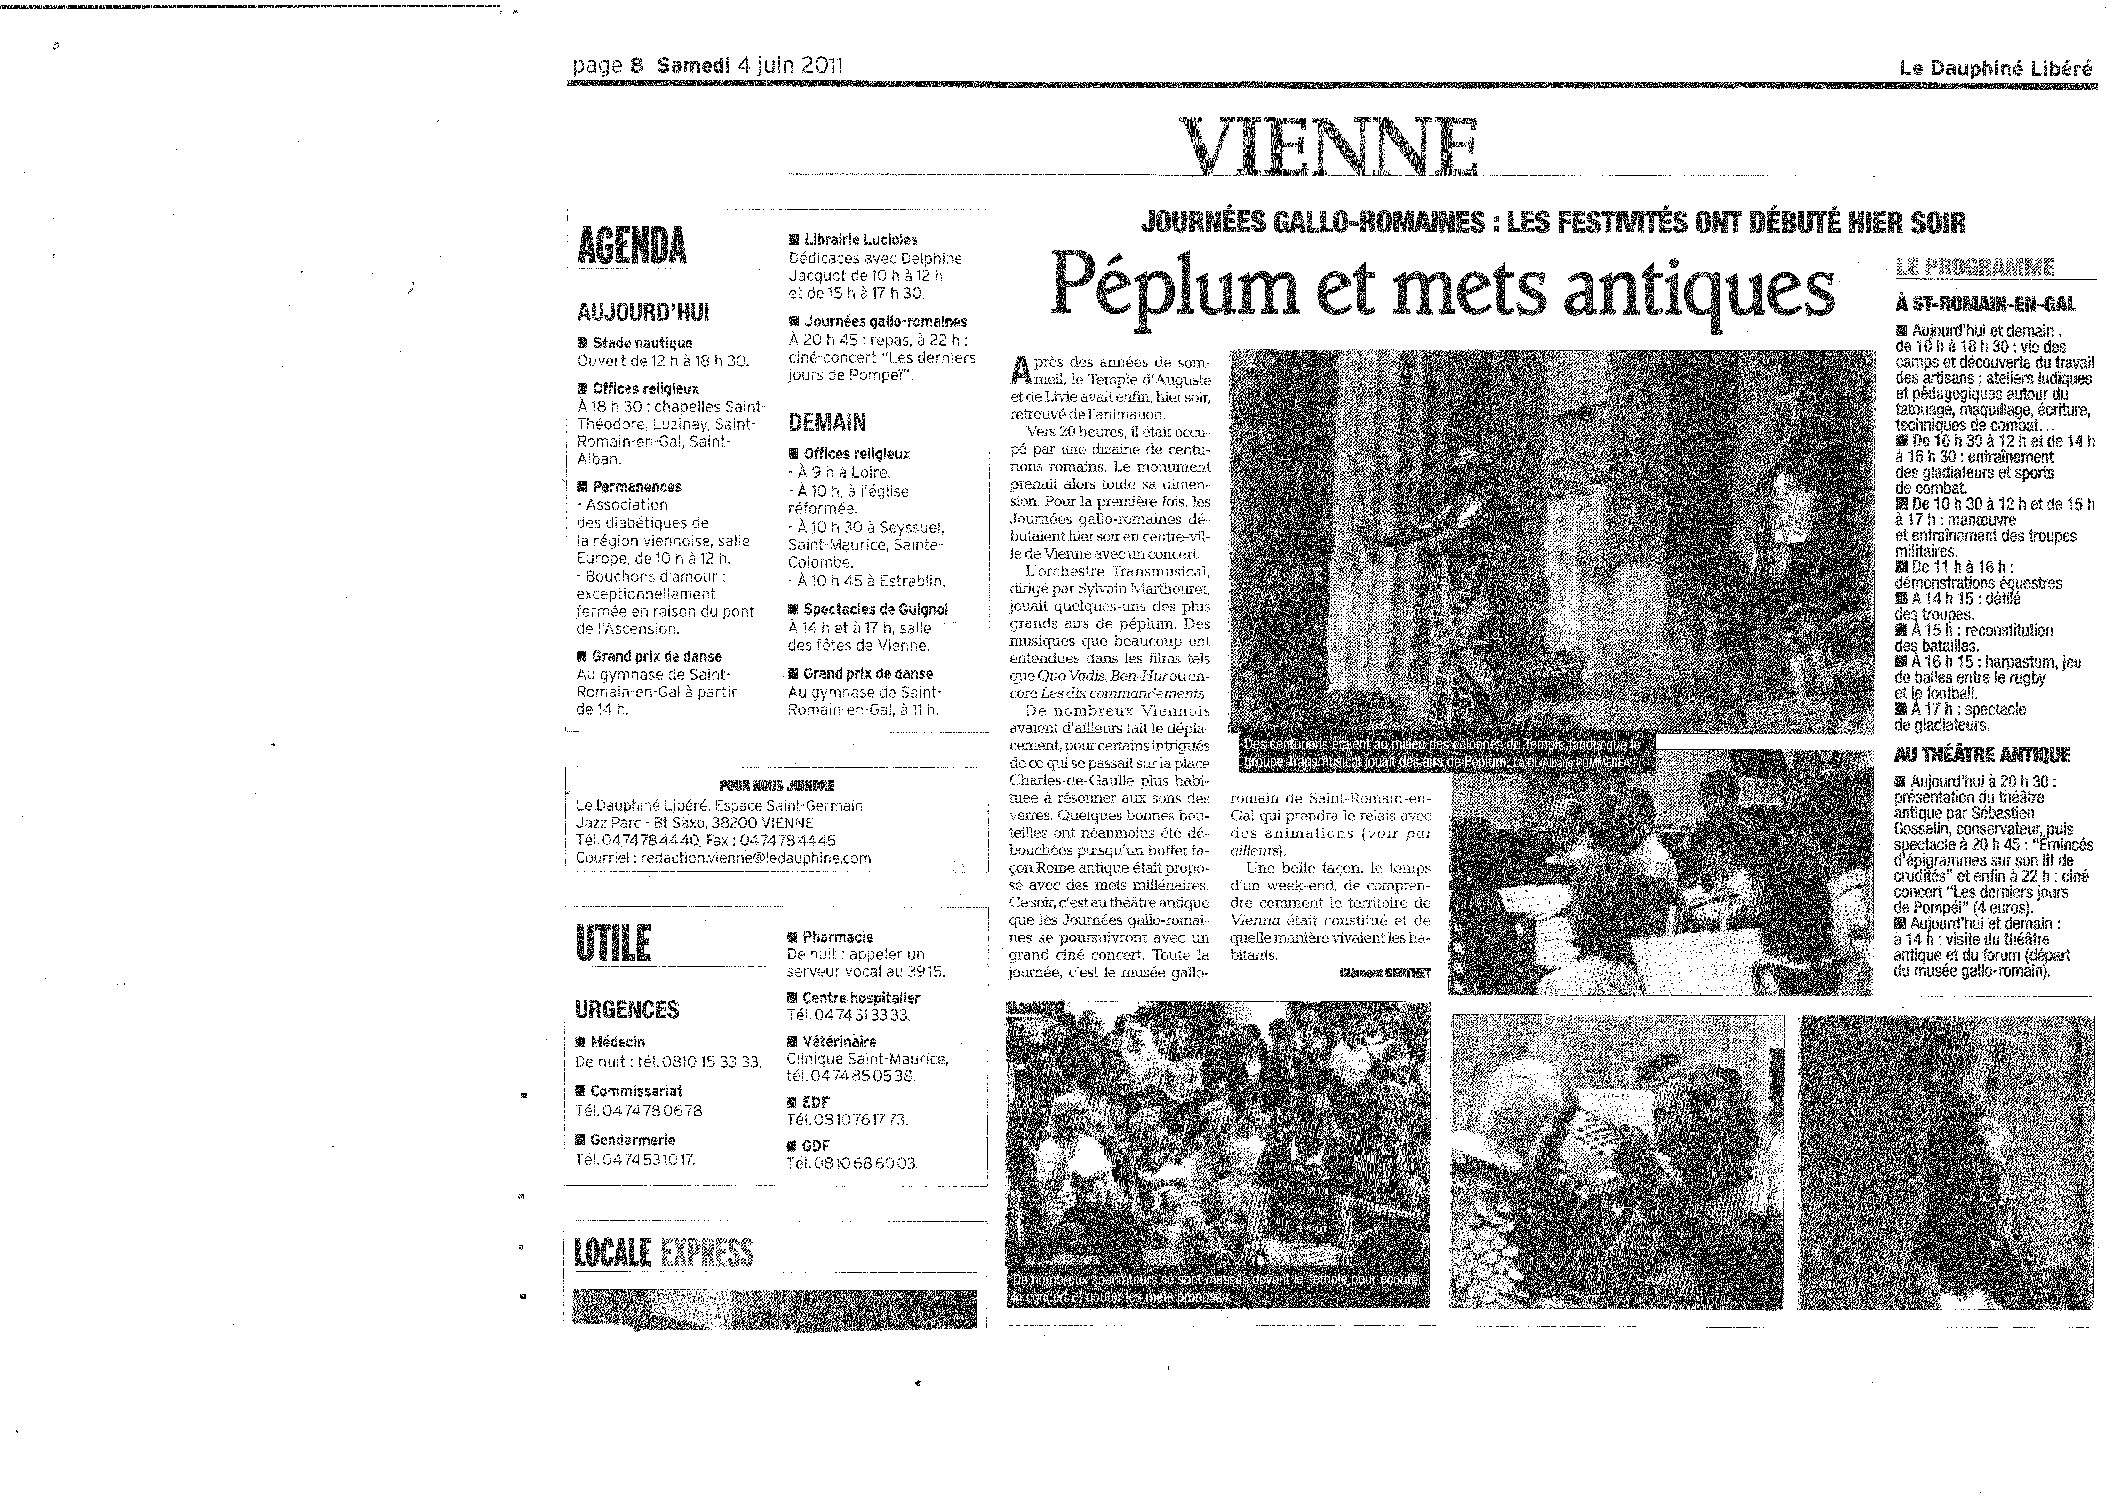 Le Dauphiné Libéré (samedi 4 juin 2011. Page 8)